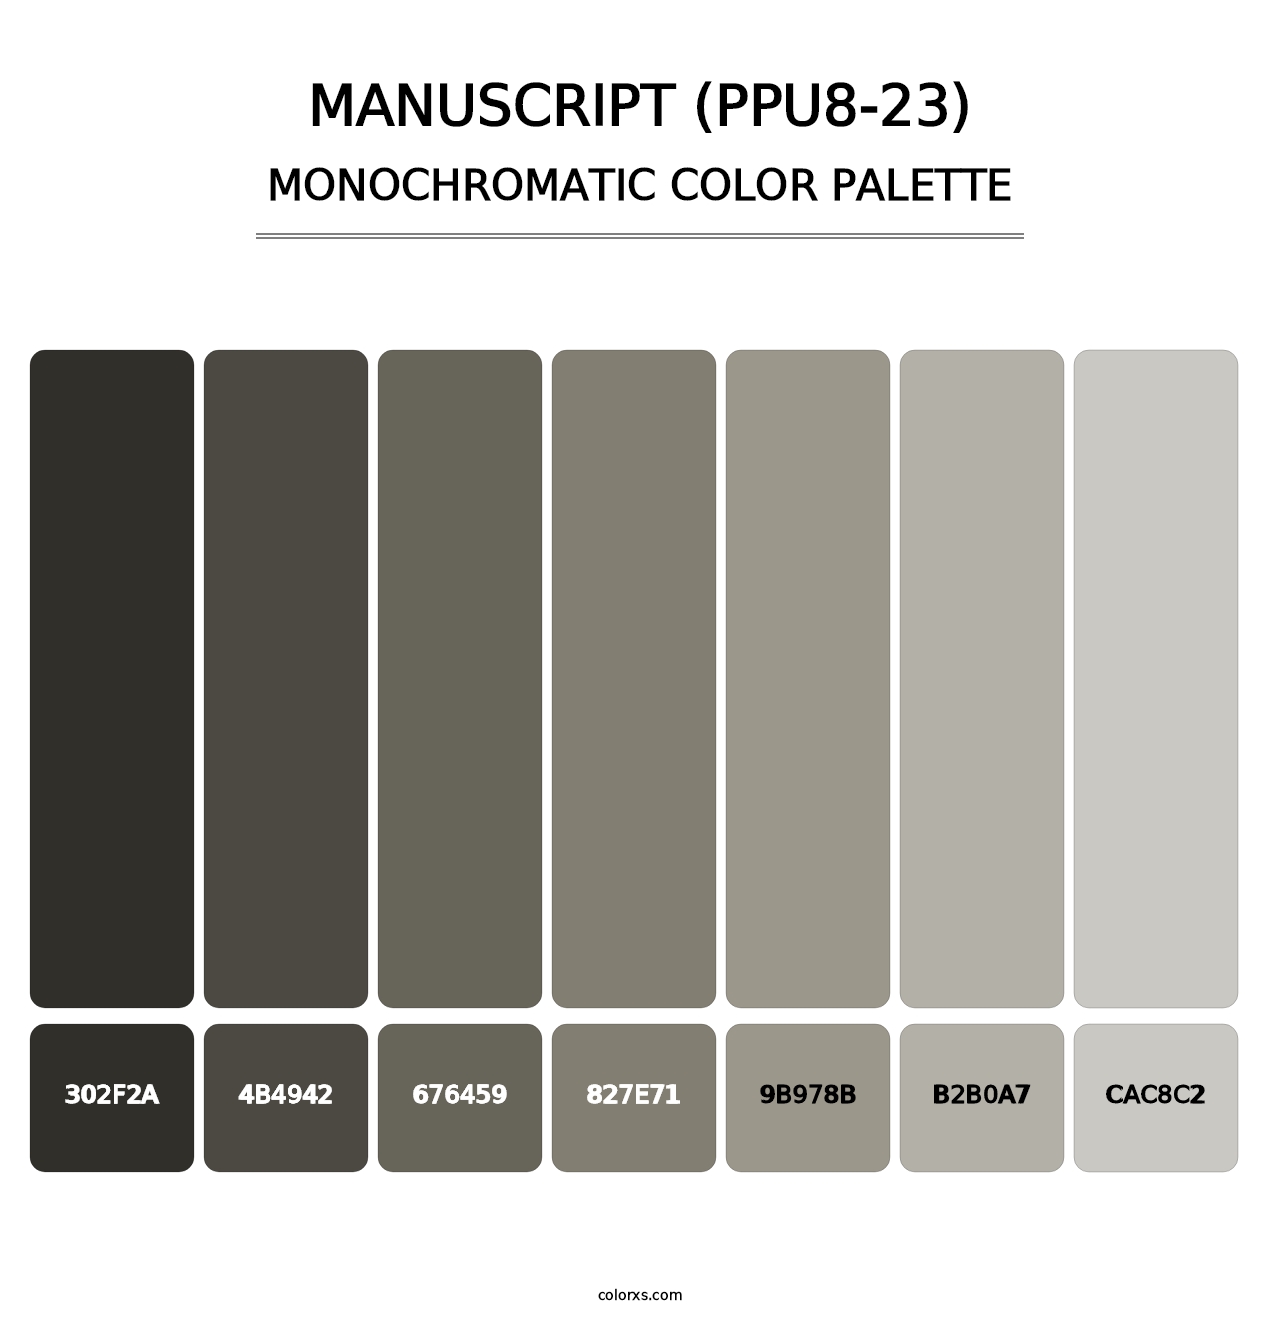 Manuscript (PPU8-23) - Monochromatic Color Palette